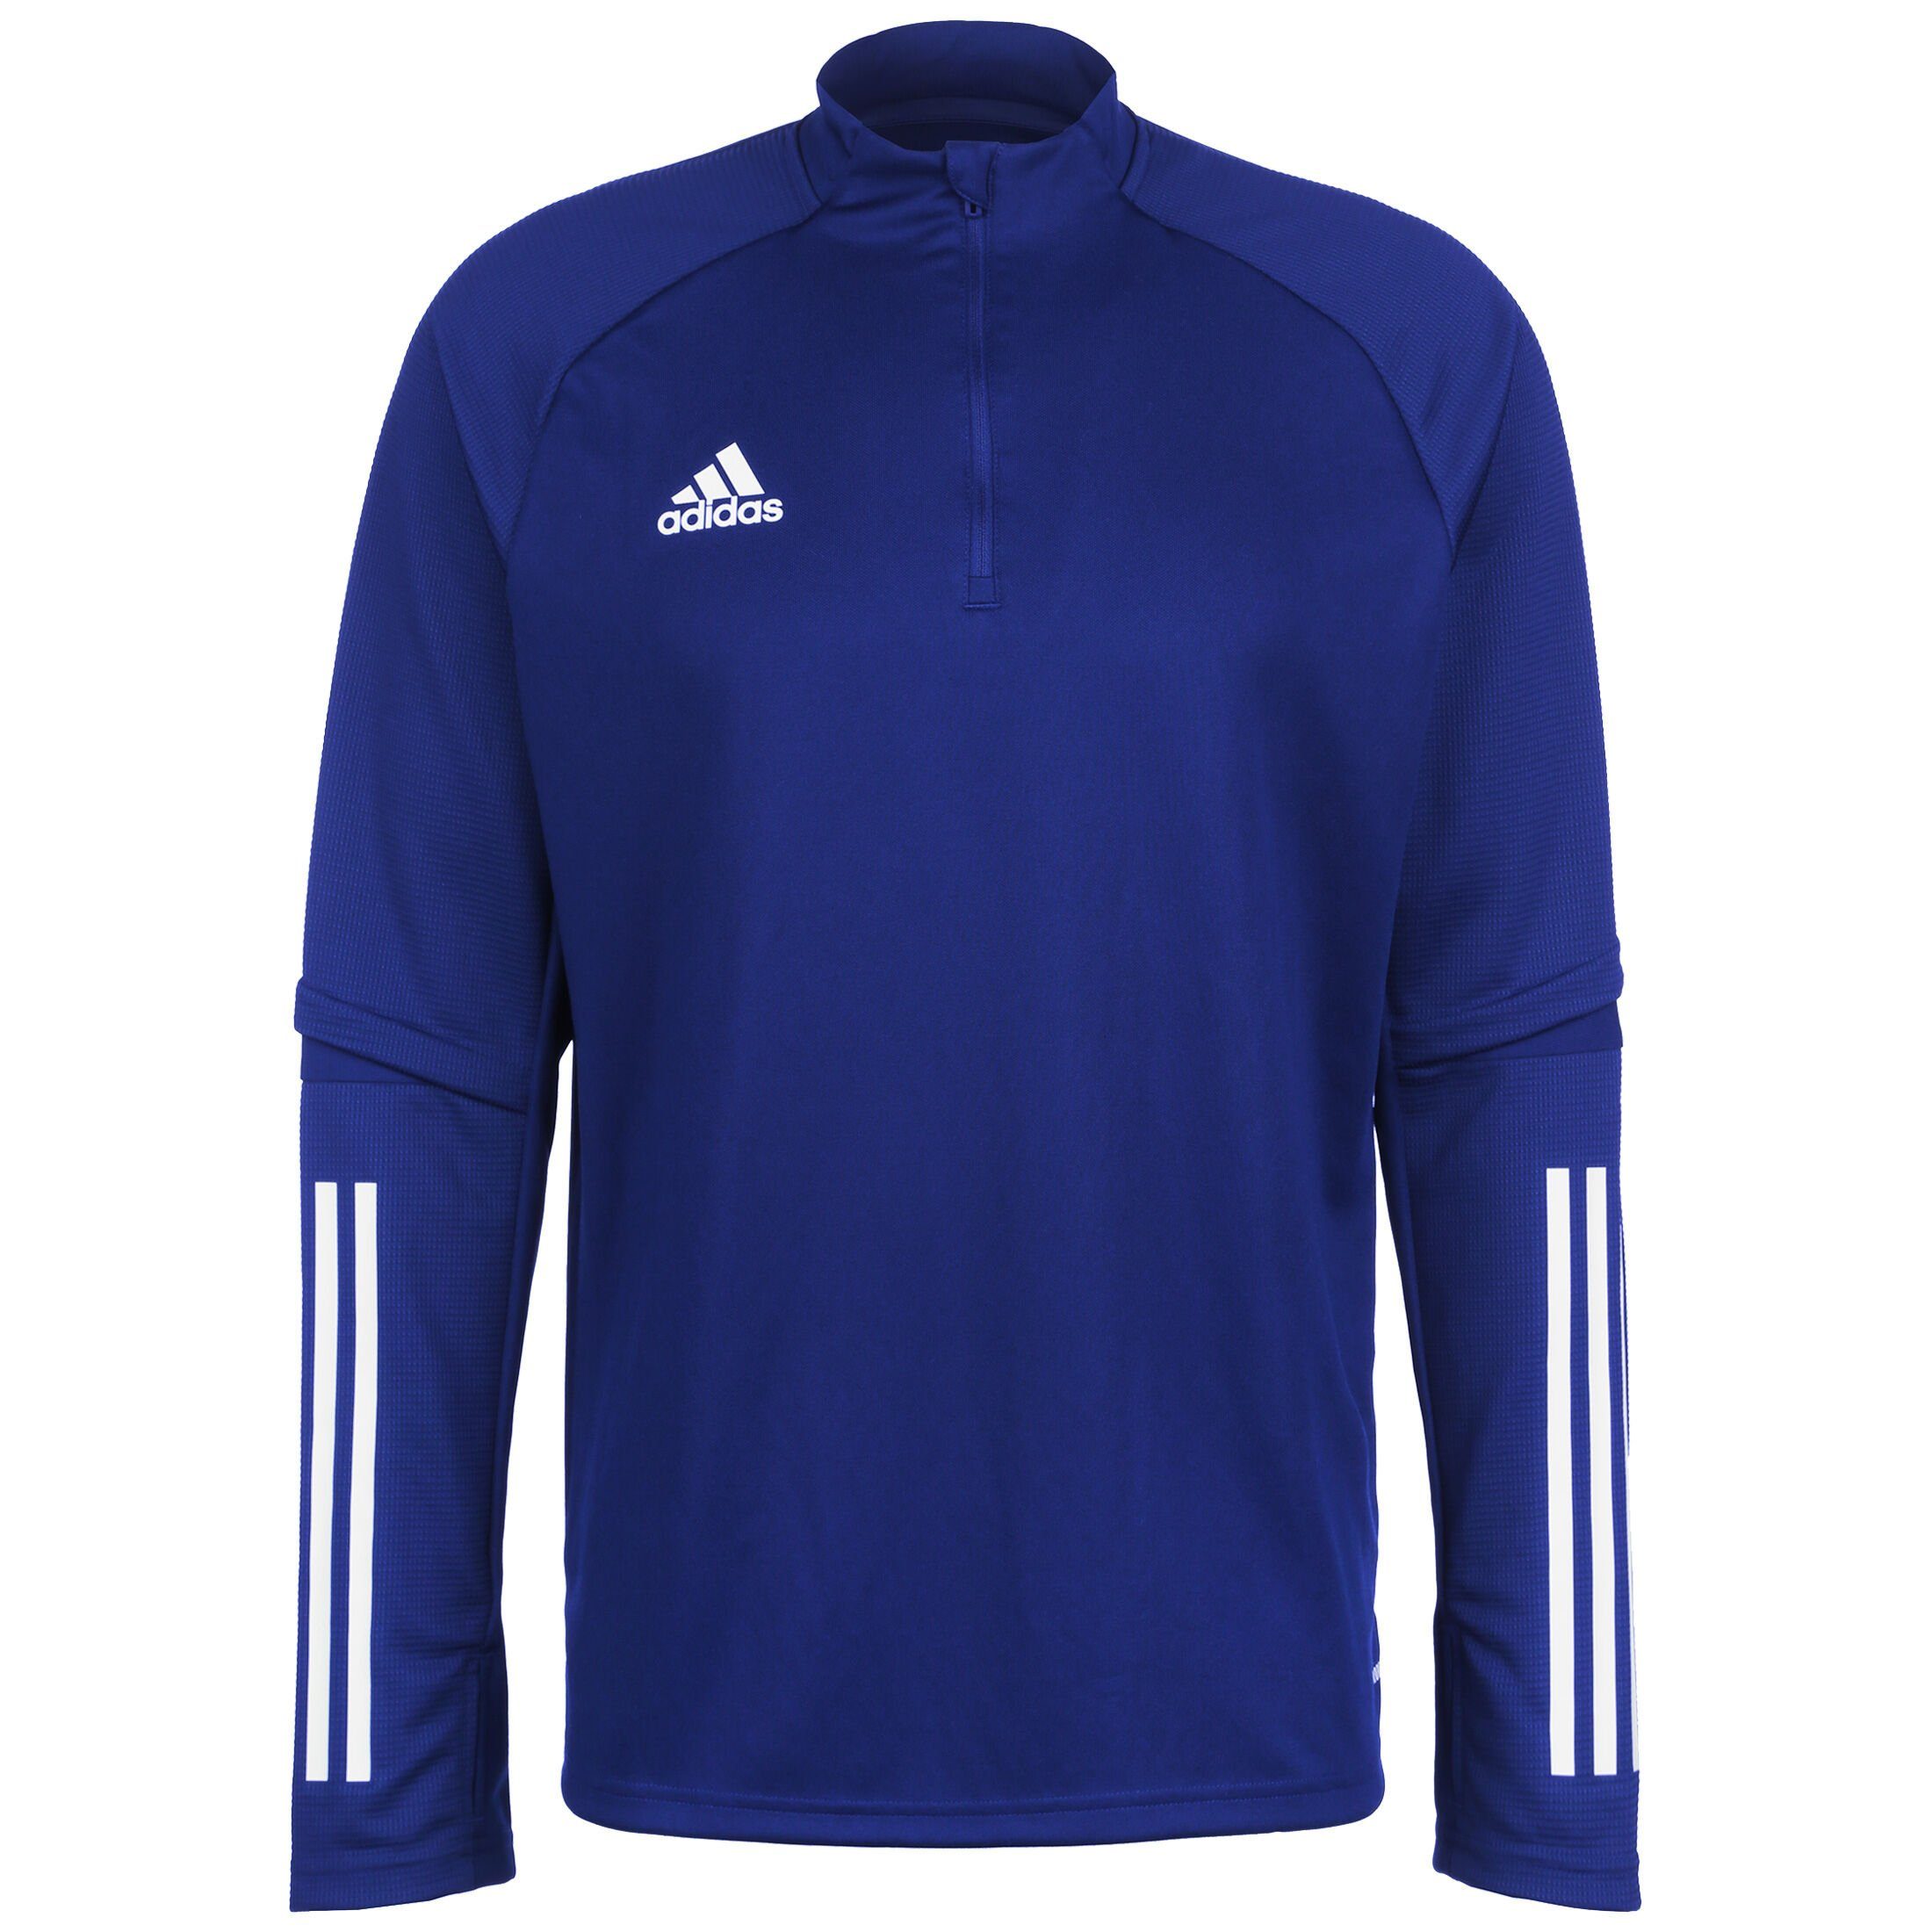 blau Herren Sweatshirt / 20 Condivo weiß adidas Performance Trainingssweat